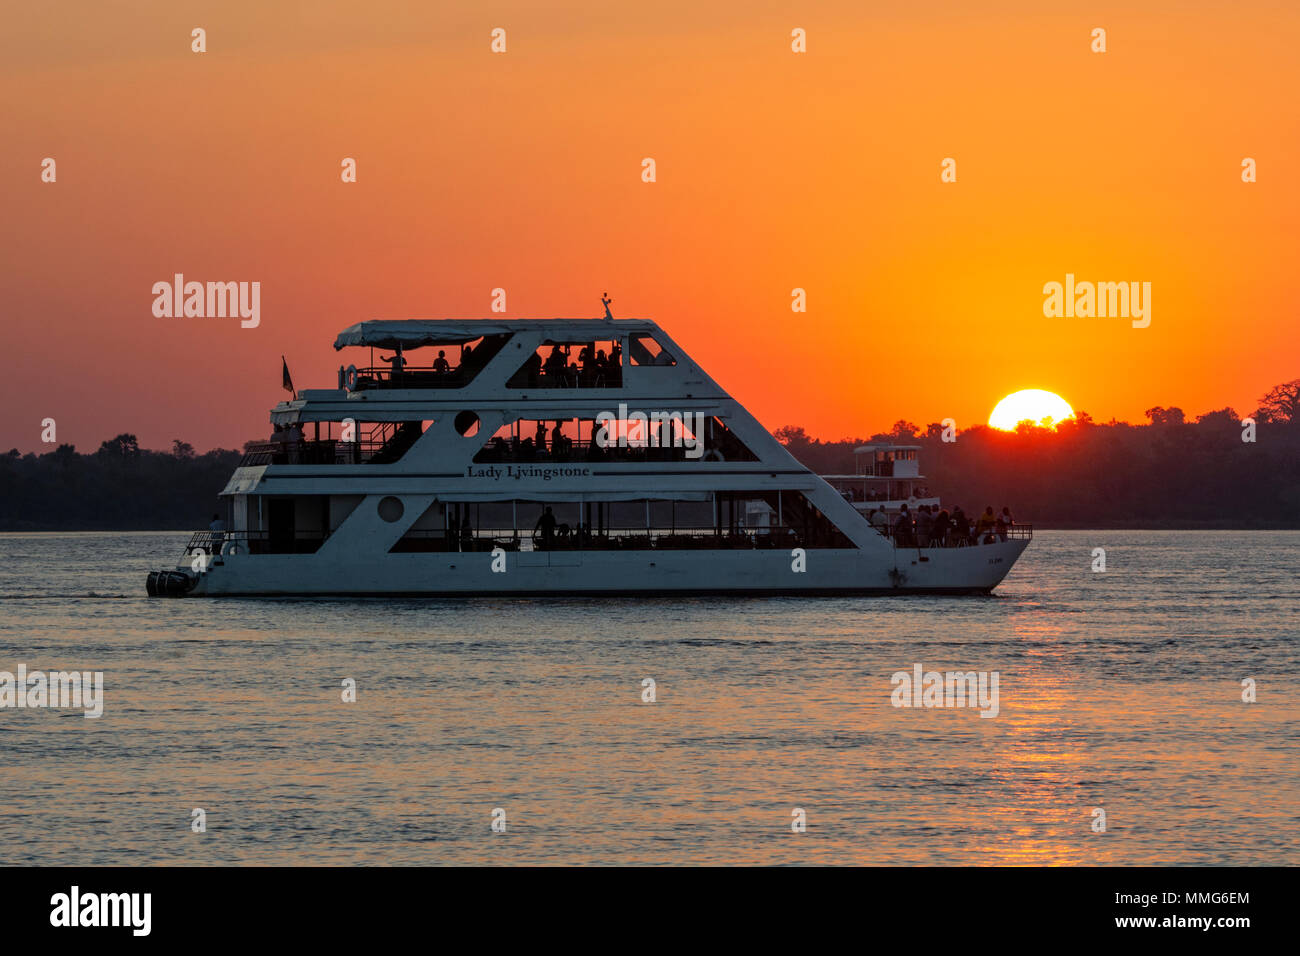 Africa, Zimbabwe, Zambezi River, near Victoria Falls. Sunset sightseeing cruise boat, Lady Livingstone, on the Zambezi River. Stock Photo